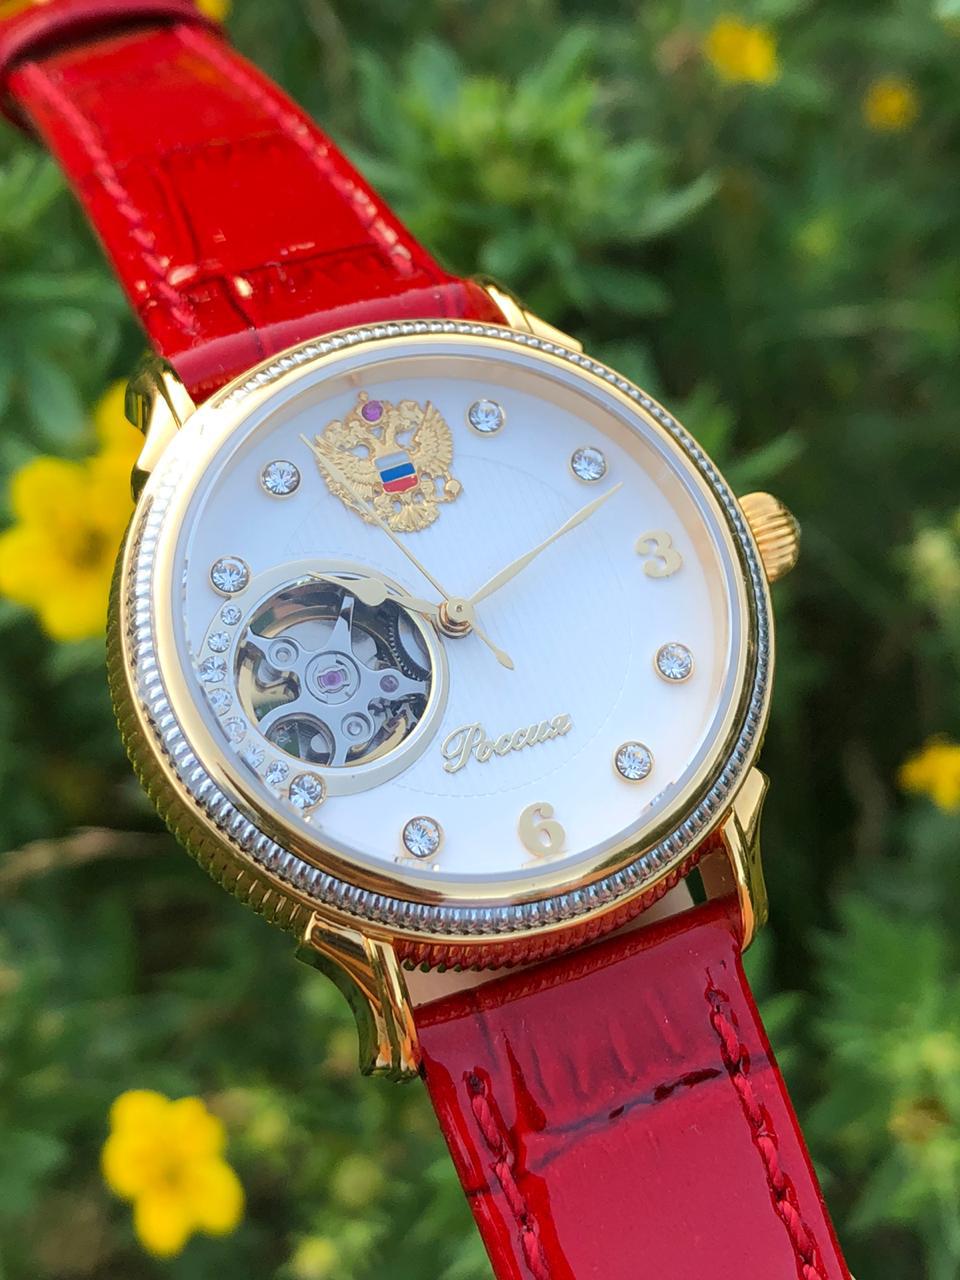 Đồng hồ Poljot nữ phiên bản Russia cực đẹp 7996542